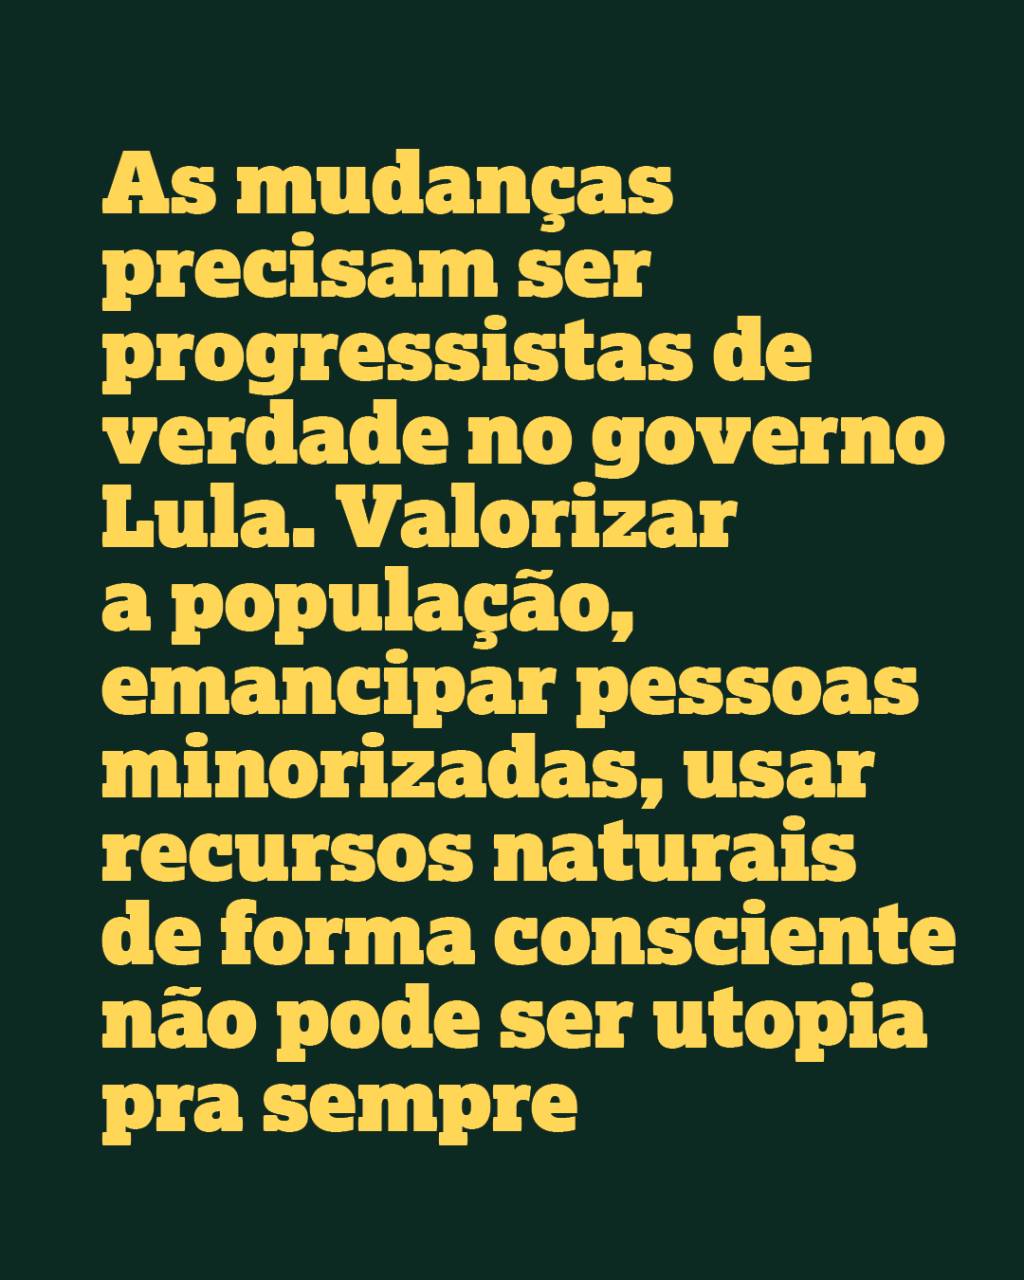 As mudanças precisam ser progressistas de verdade no governo Lula. Valorizar a população, emancipar pessoas minorizadas, usar recursos naturais de forma consciente não pode ser utopia pra sempre